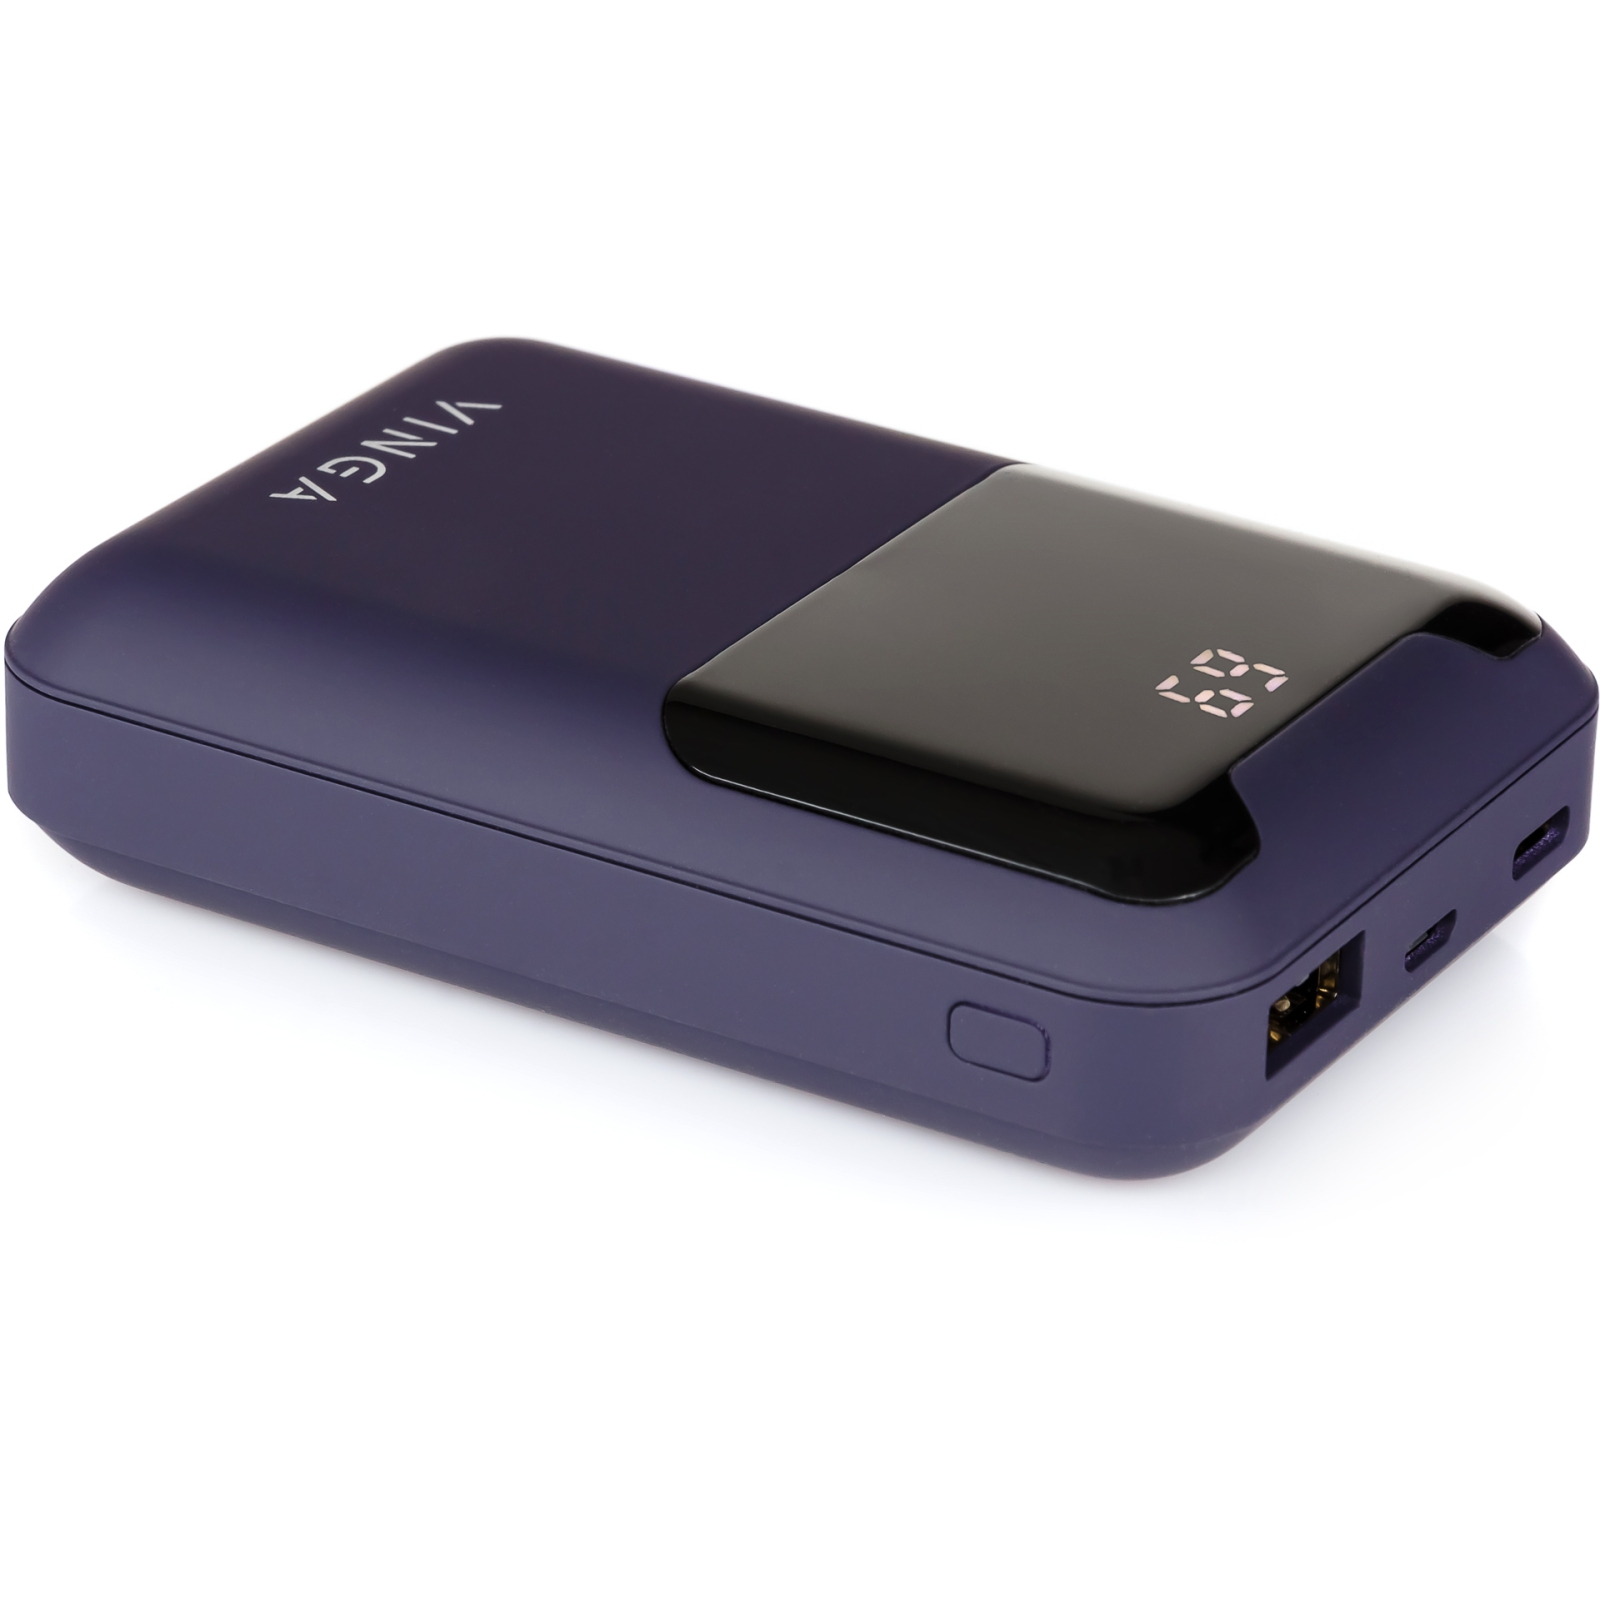 Батарея универсальная Vinga 10000 mAh Display soft touch purple (BTPB0310LEDROP) изображение 3